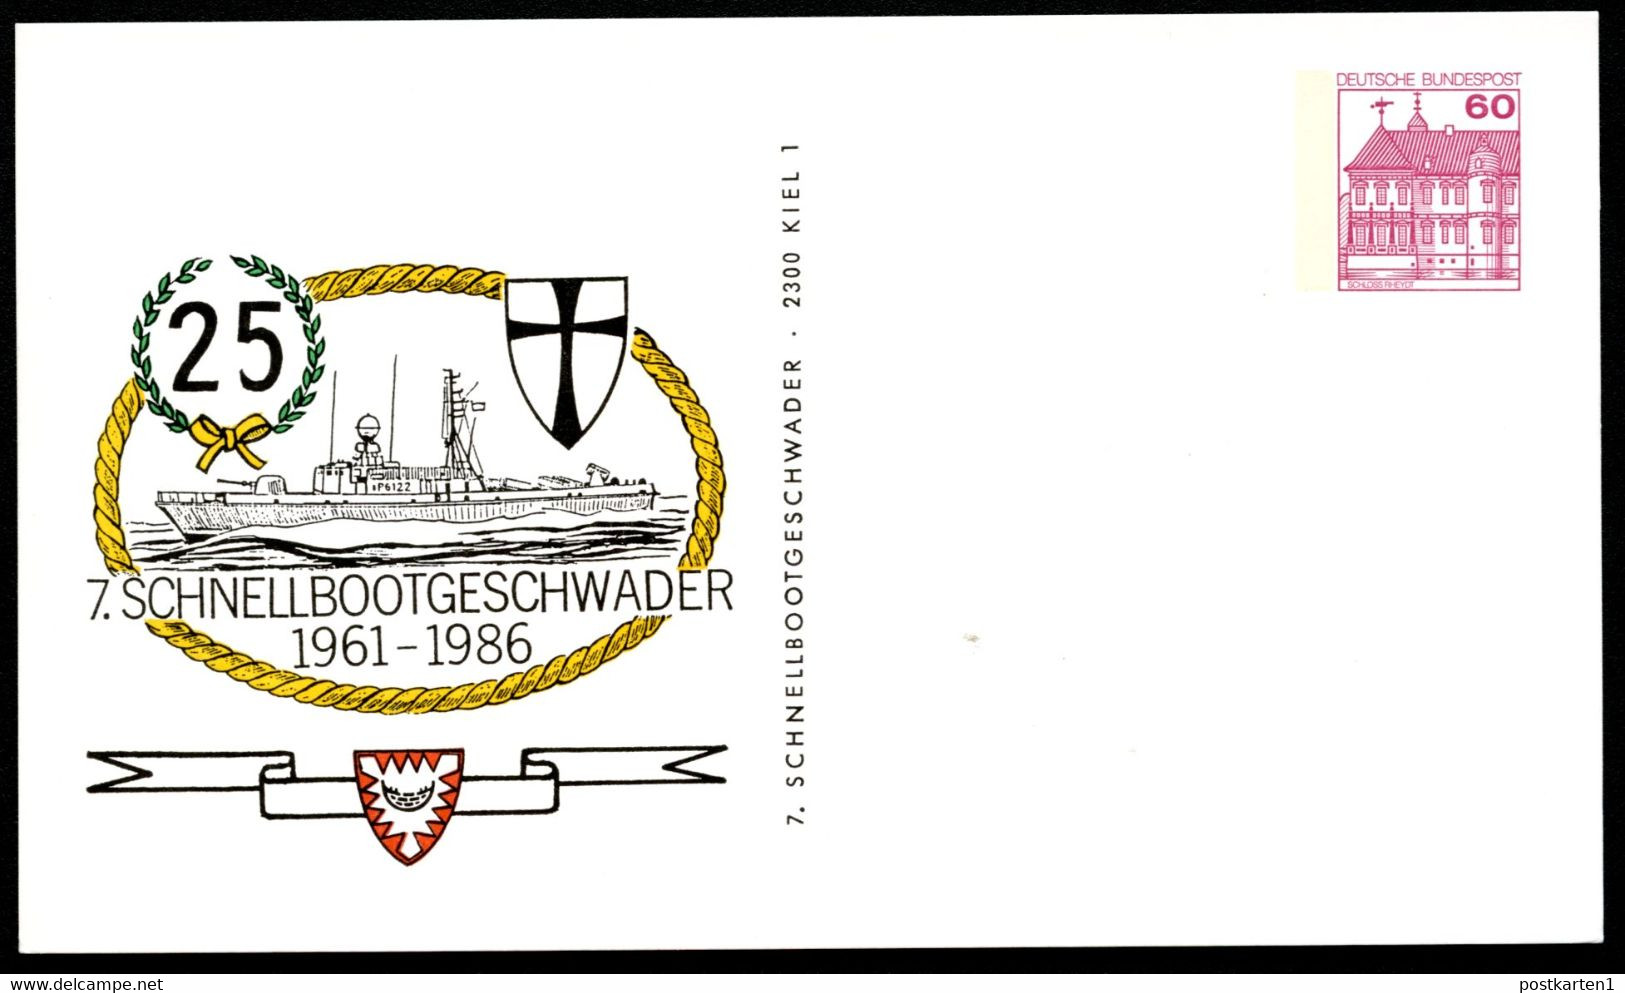 Bund PP106 C2/025 25 J. 7. SCHNELLBOOTGESCHWADER Kiel 1986 - Private Postcards - Mint